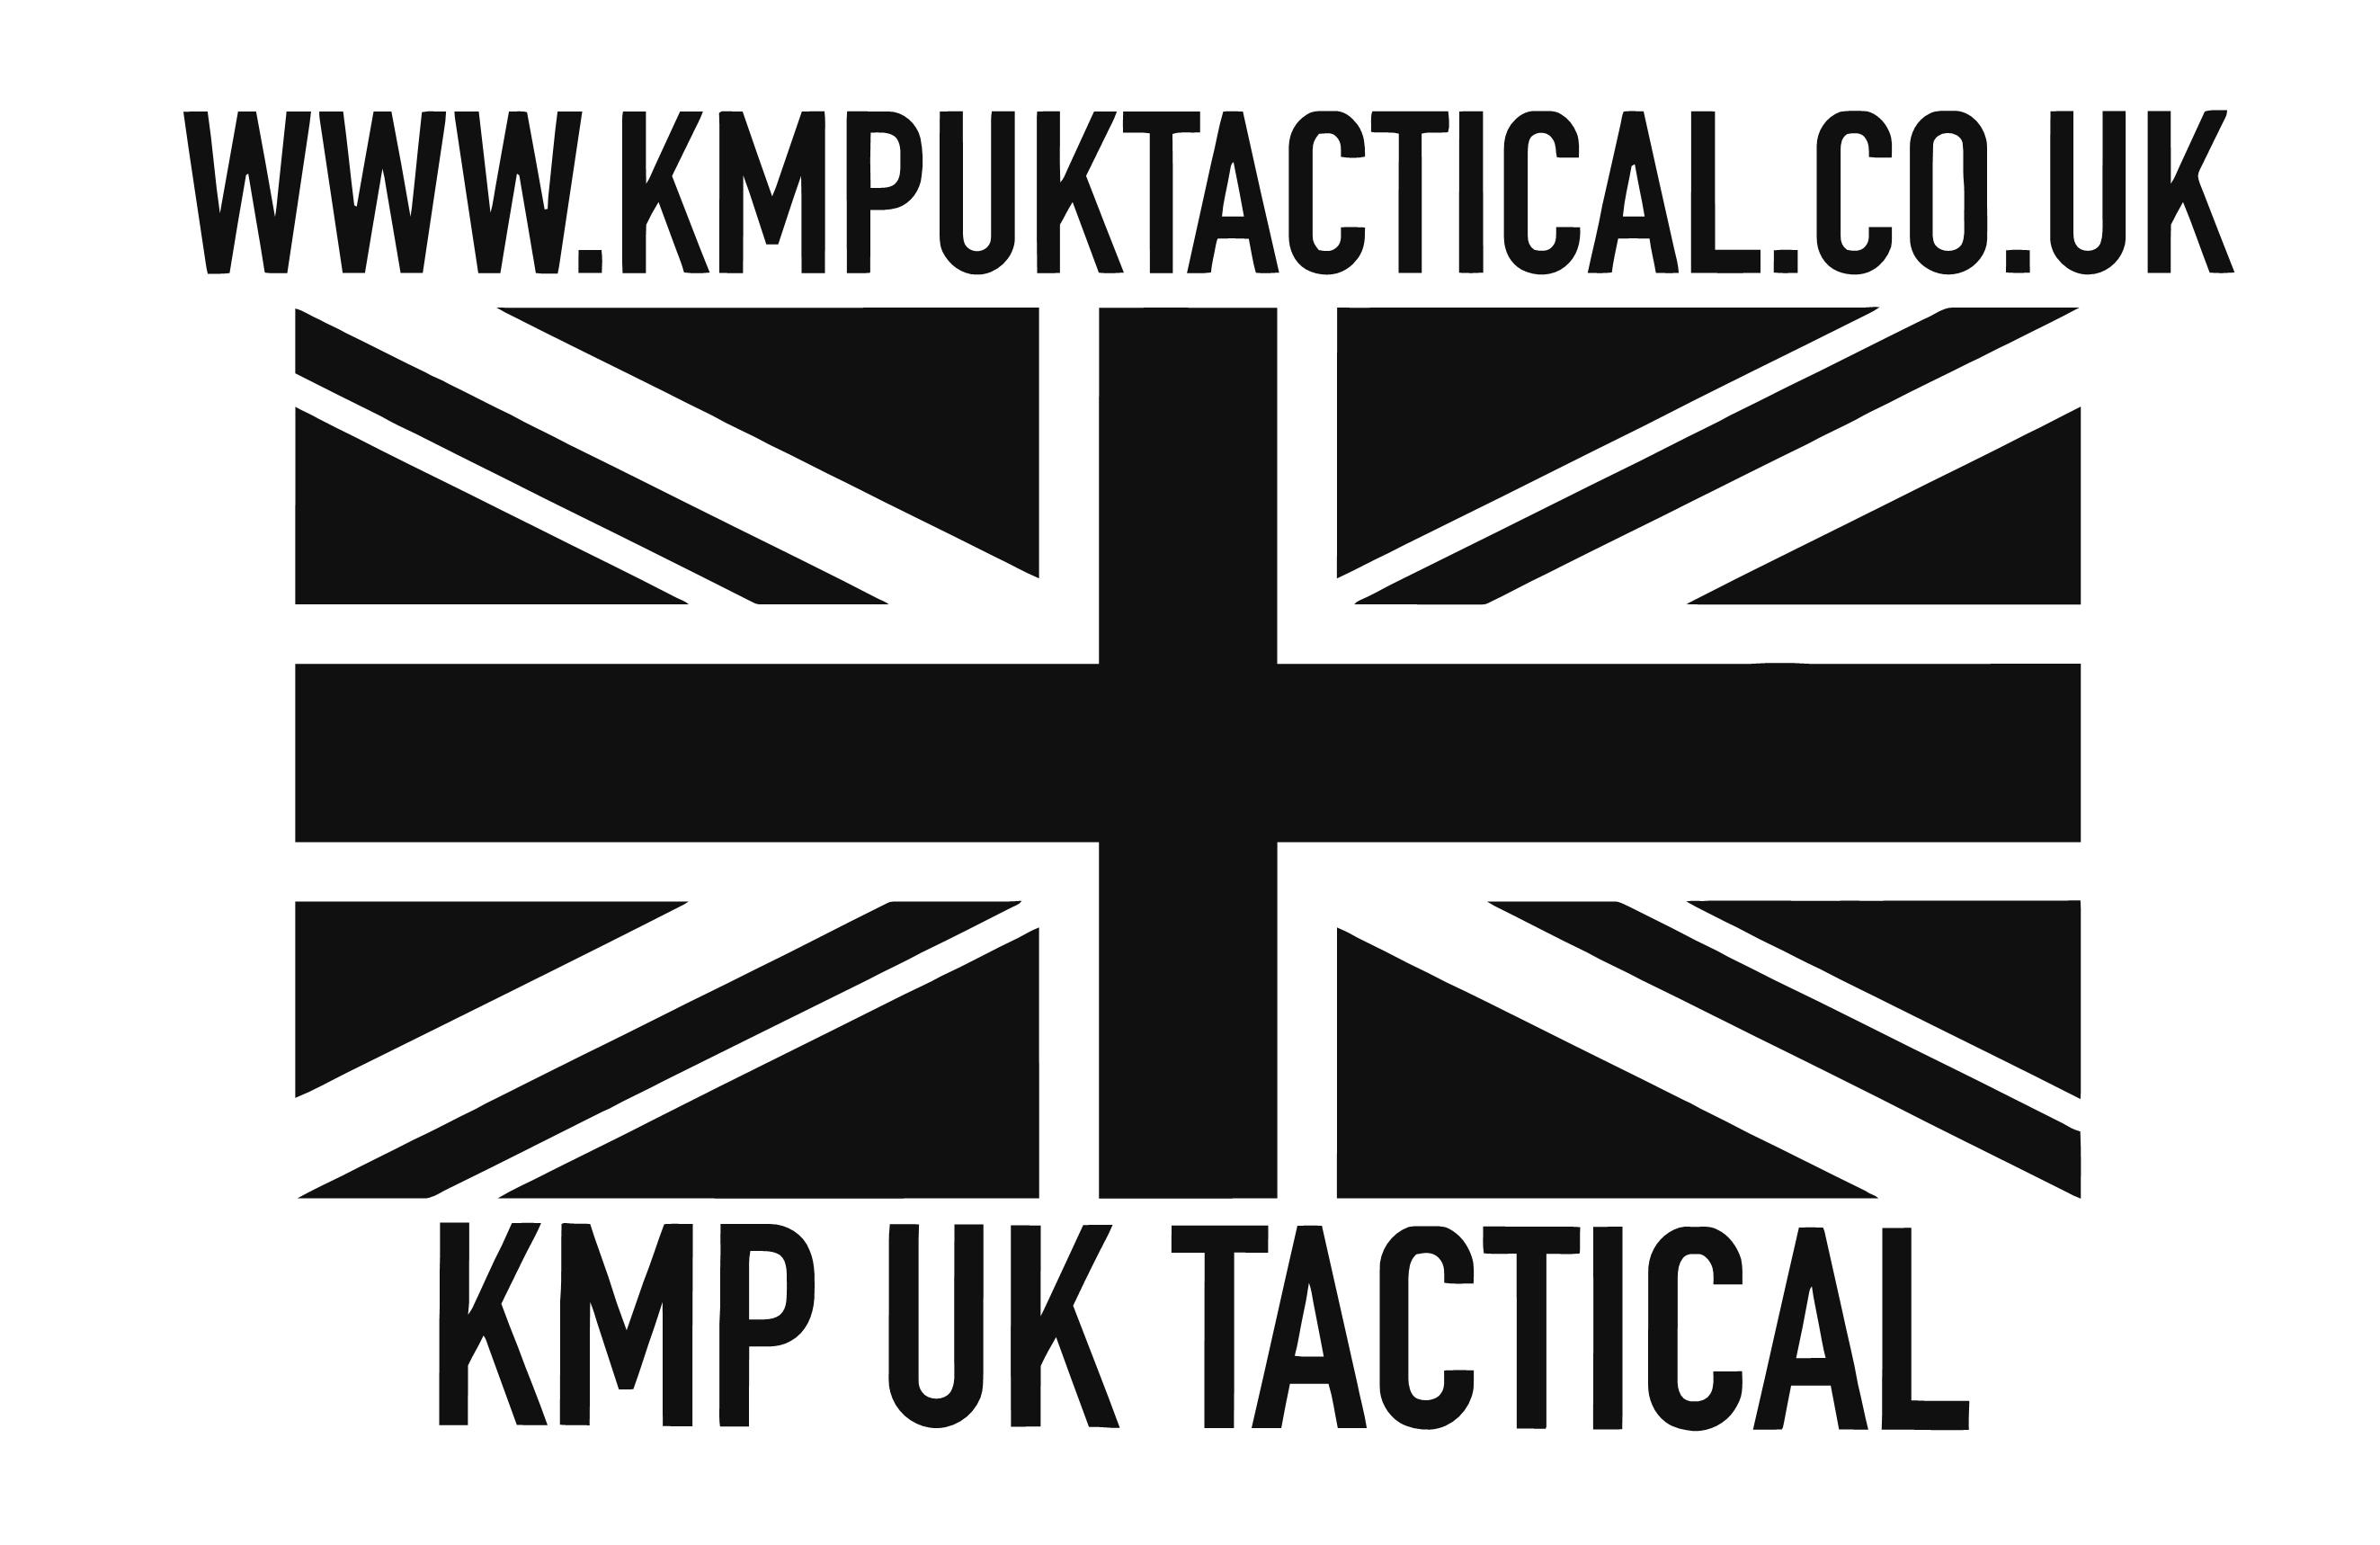 KMP UK TACTICAL